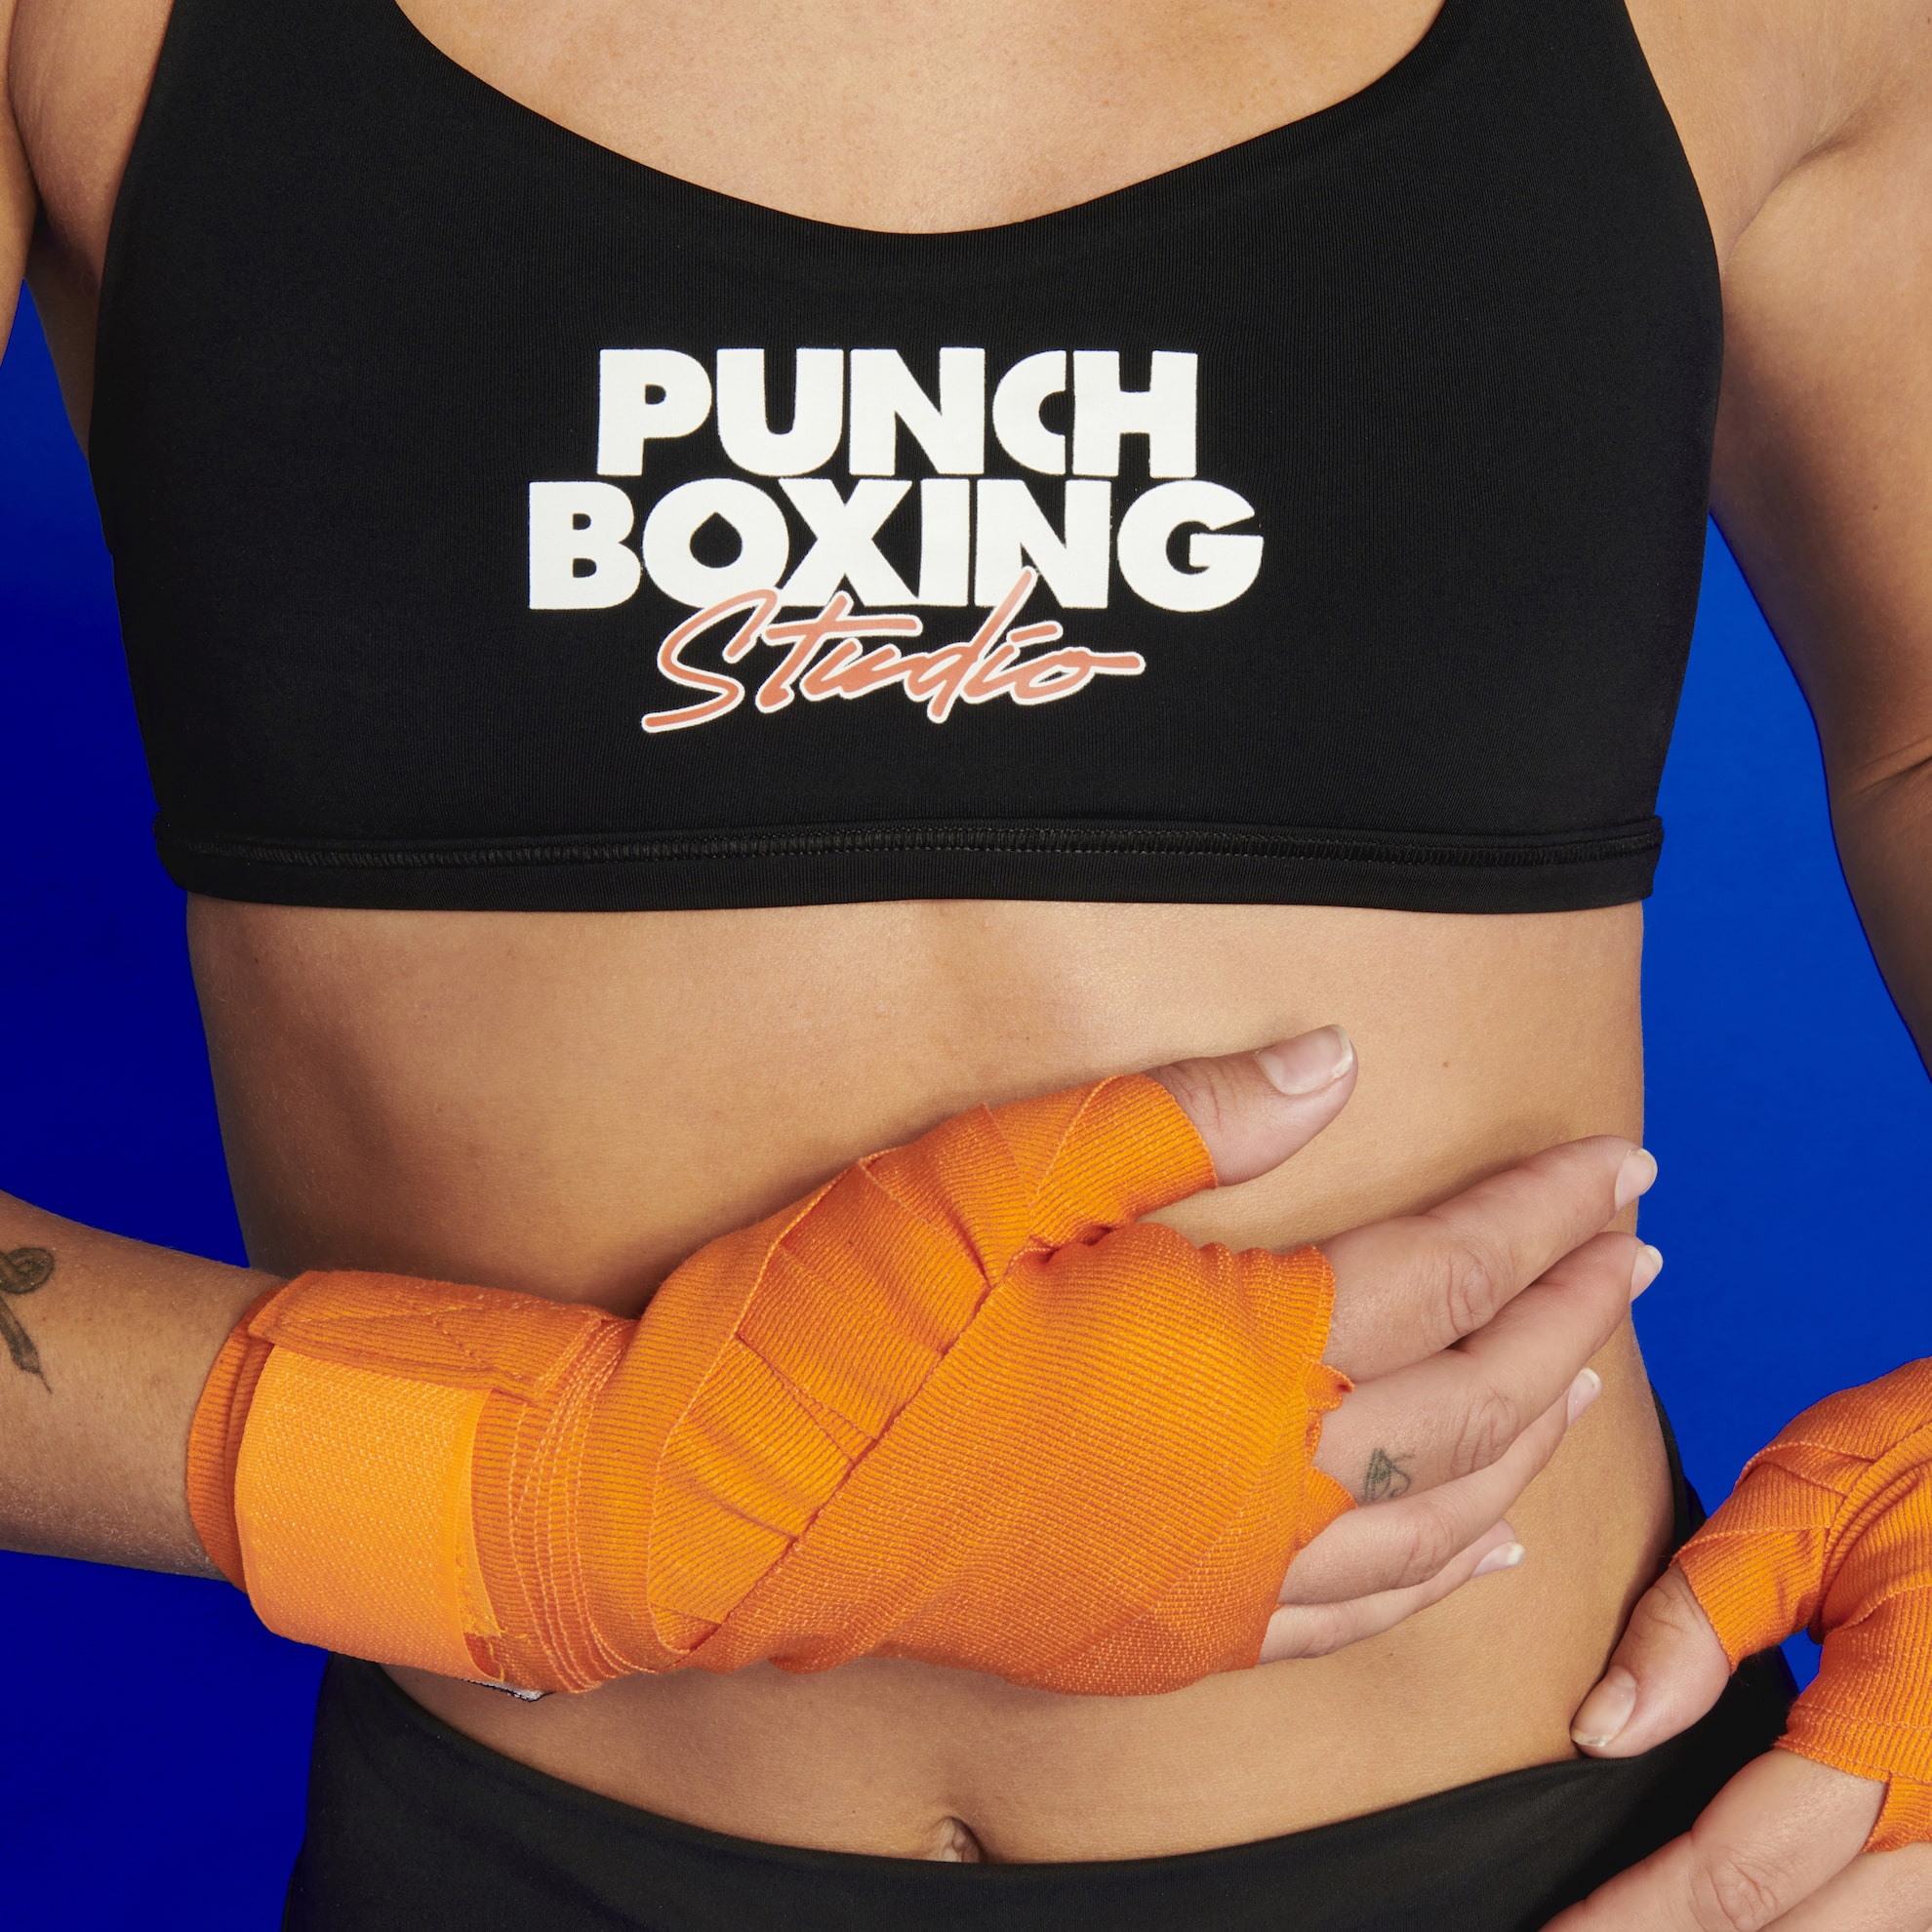 One Punch Boxing Club : Lire les avis et réserver des cours sur